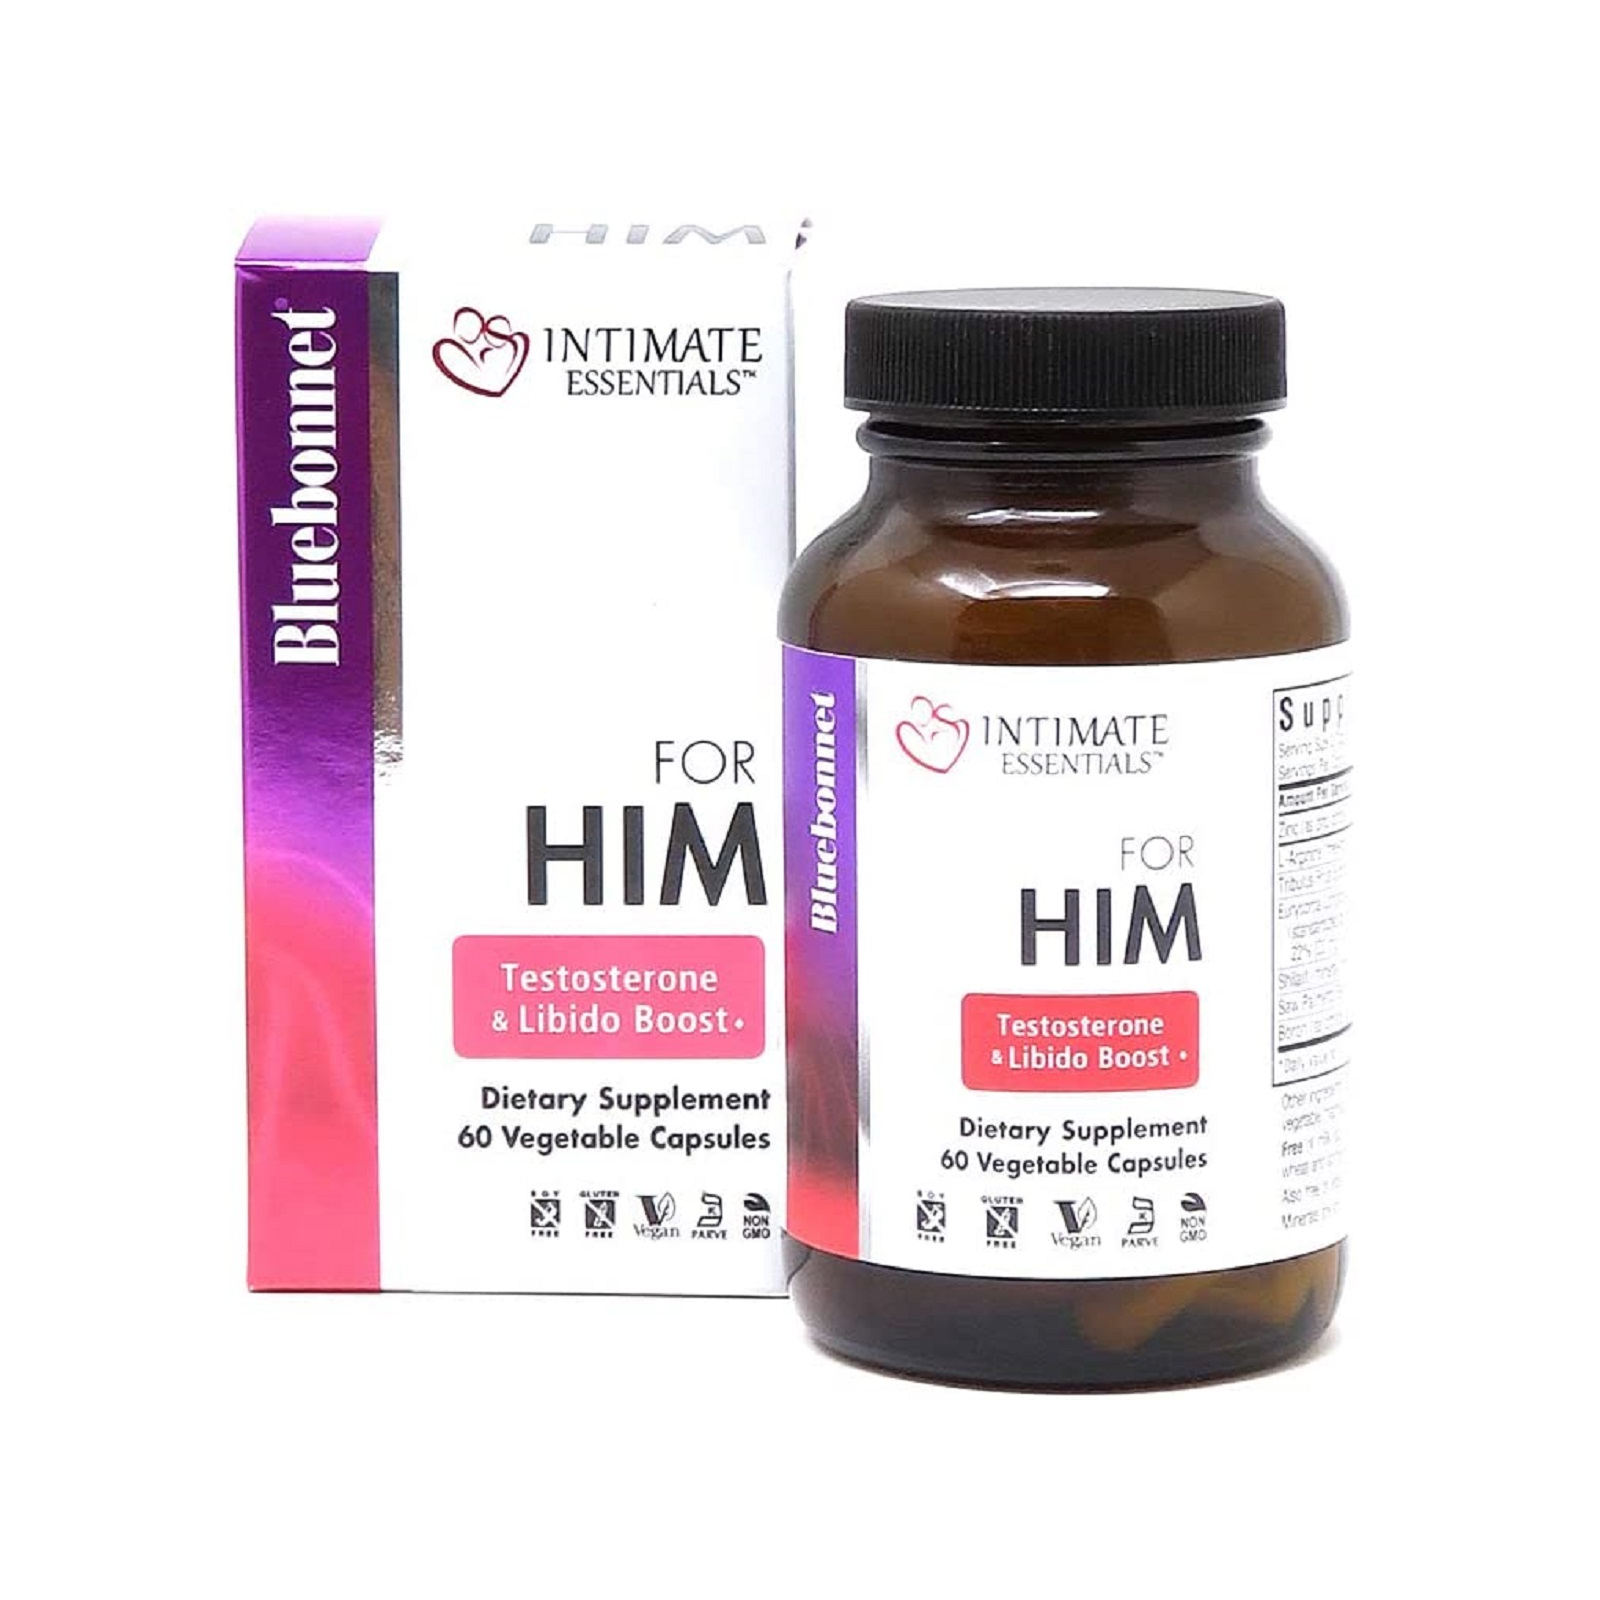 Витаминно-минеральный комплекс Bluebonnet Nutrition Комплекс Для Него, Intimate Essentials For Him, Testosterone (BLB4002)